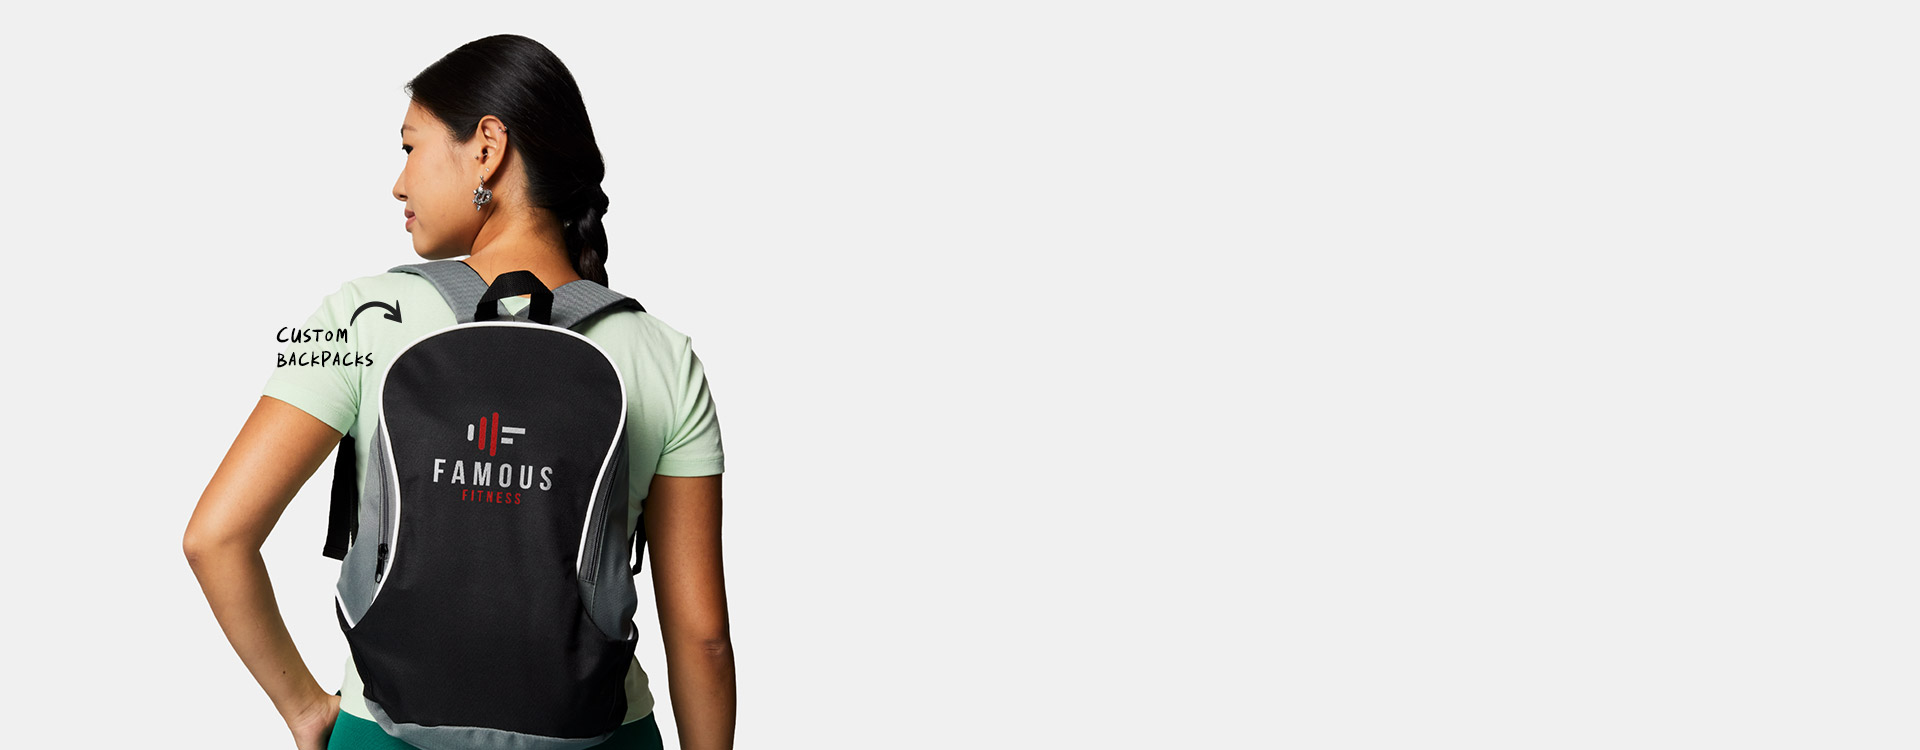 merch for employees - custom backpacks